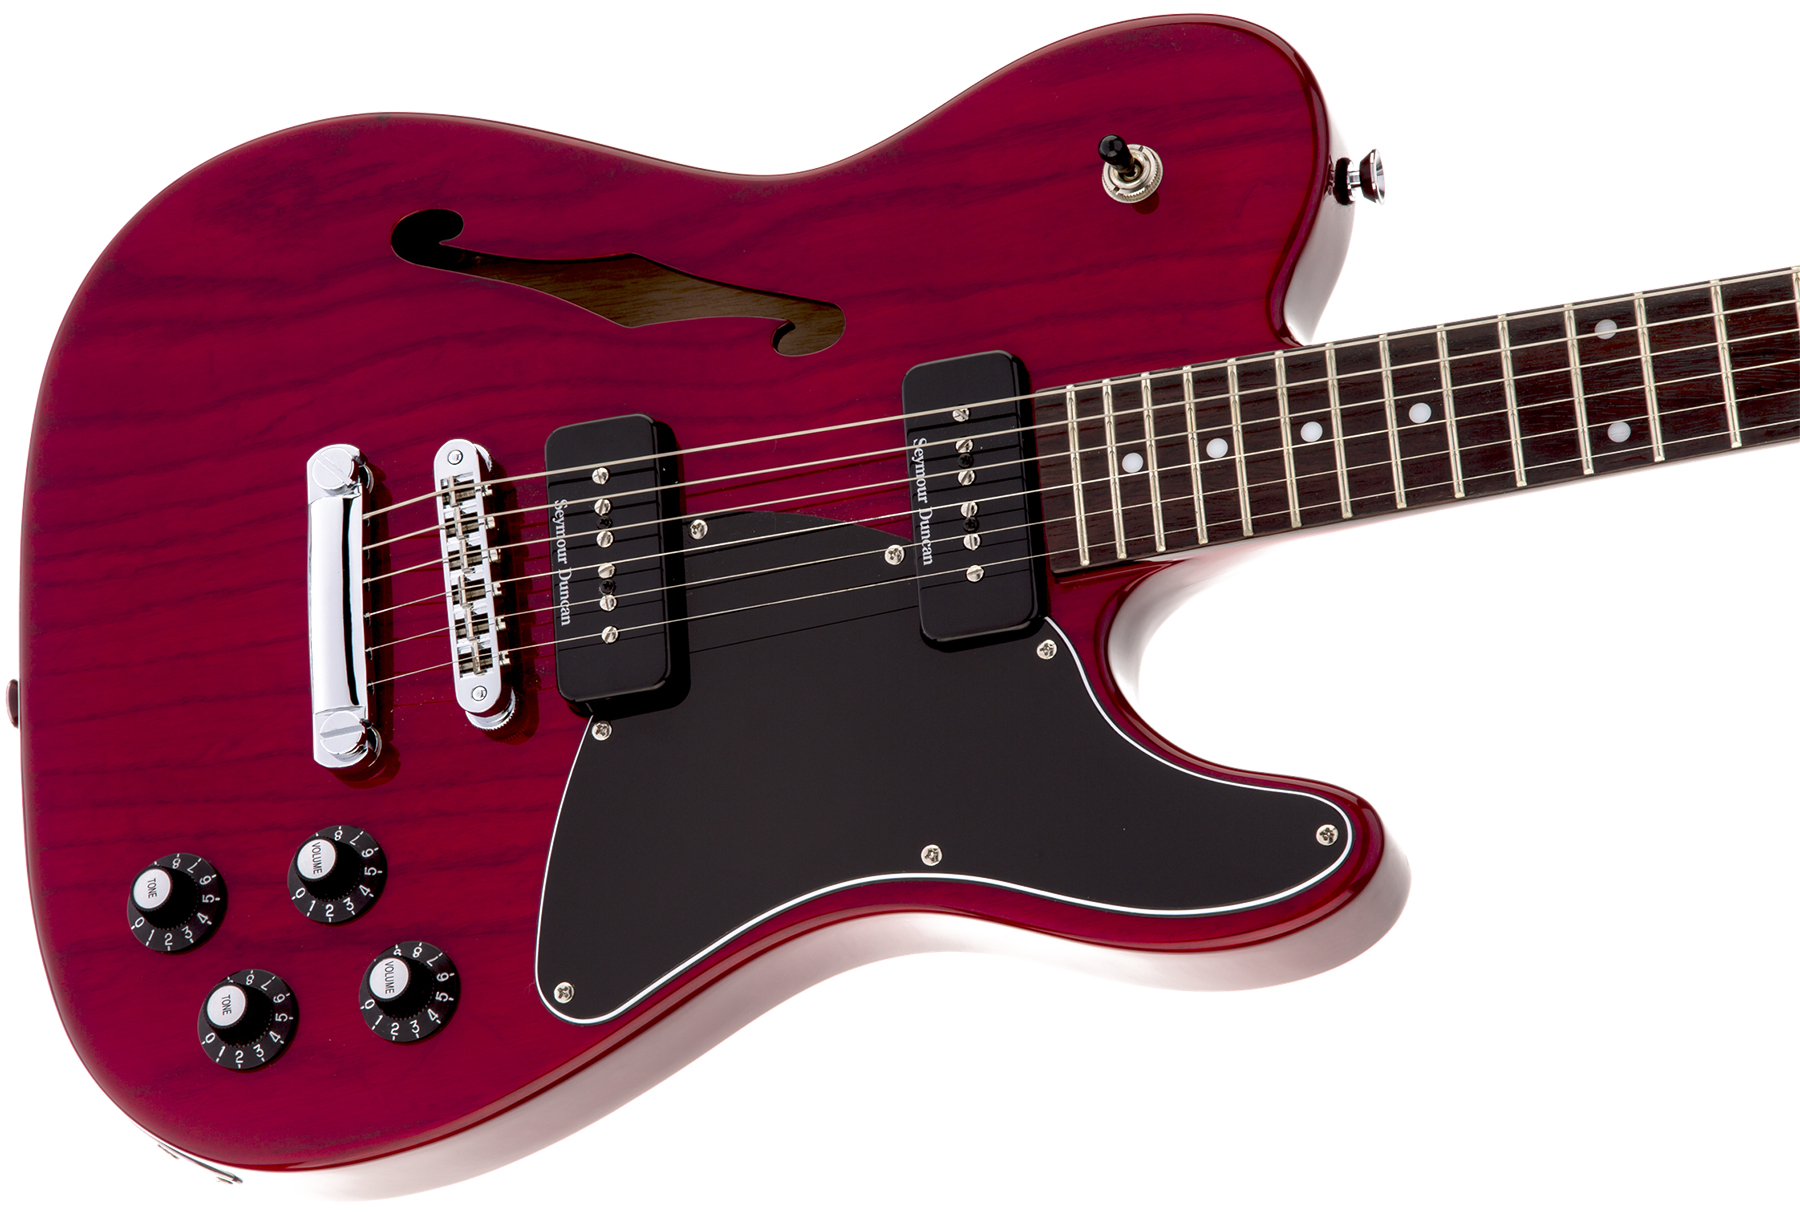 Fender Jim Adkins Tele Ja-90 Mex Signature 2p90 Lau - Crimson Red Transparent - Guitarra eléctrica con forma de tel - Variation 2